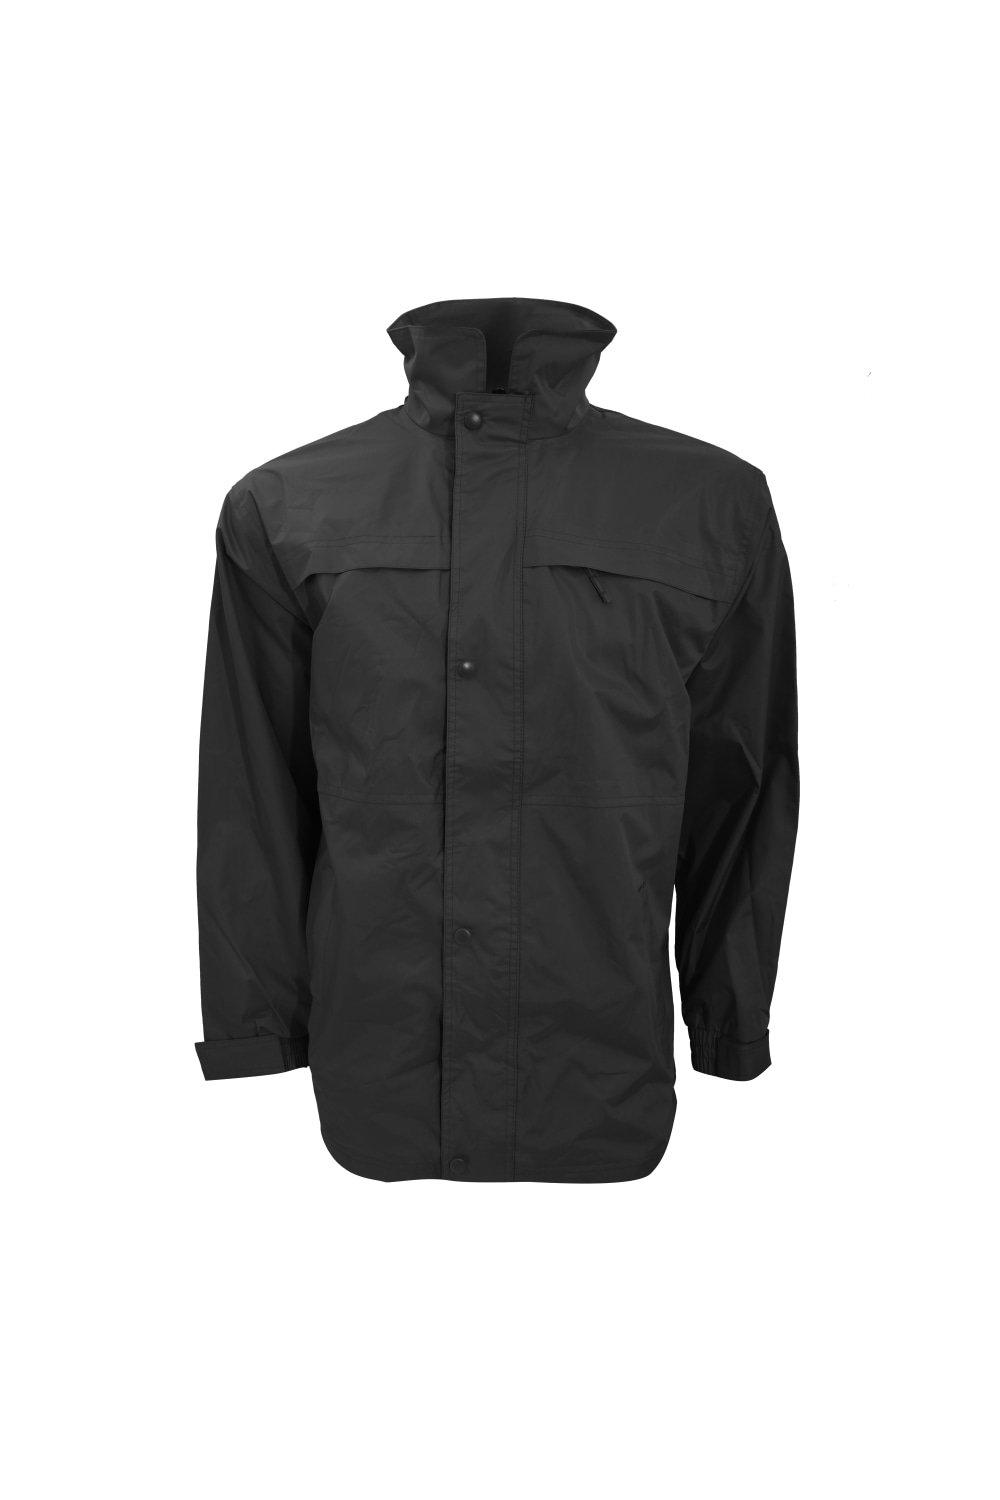 Многофункциональная водонепроницаемая ветрозащитная куртка средней тяжести Result, черный